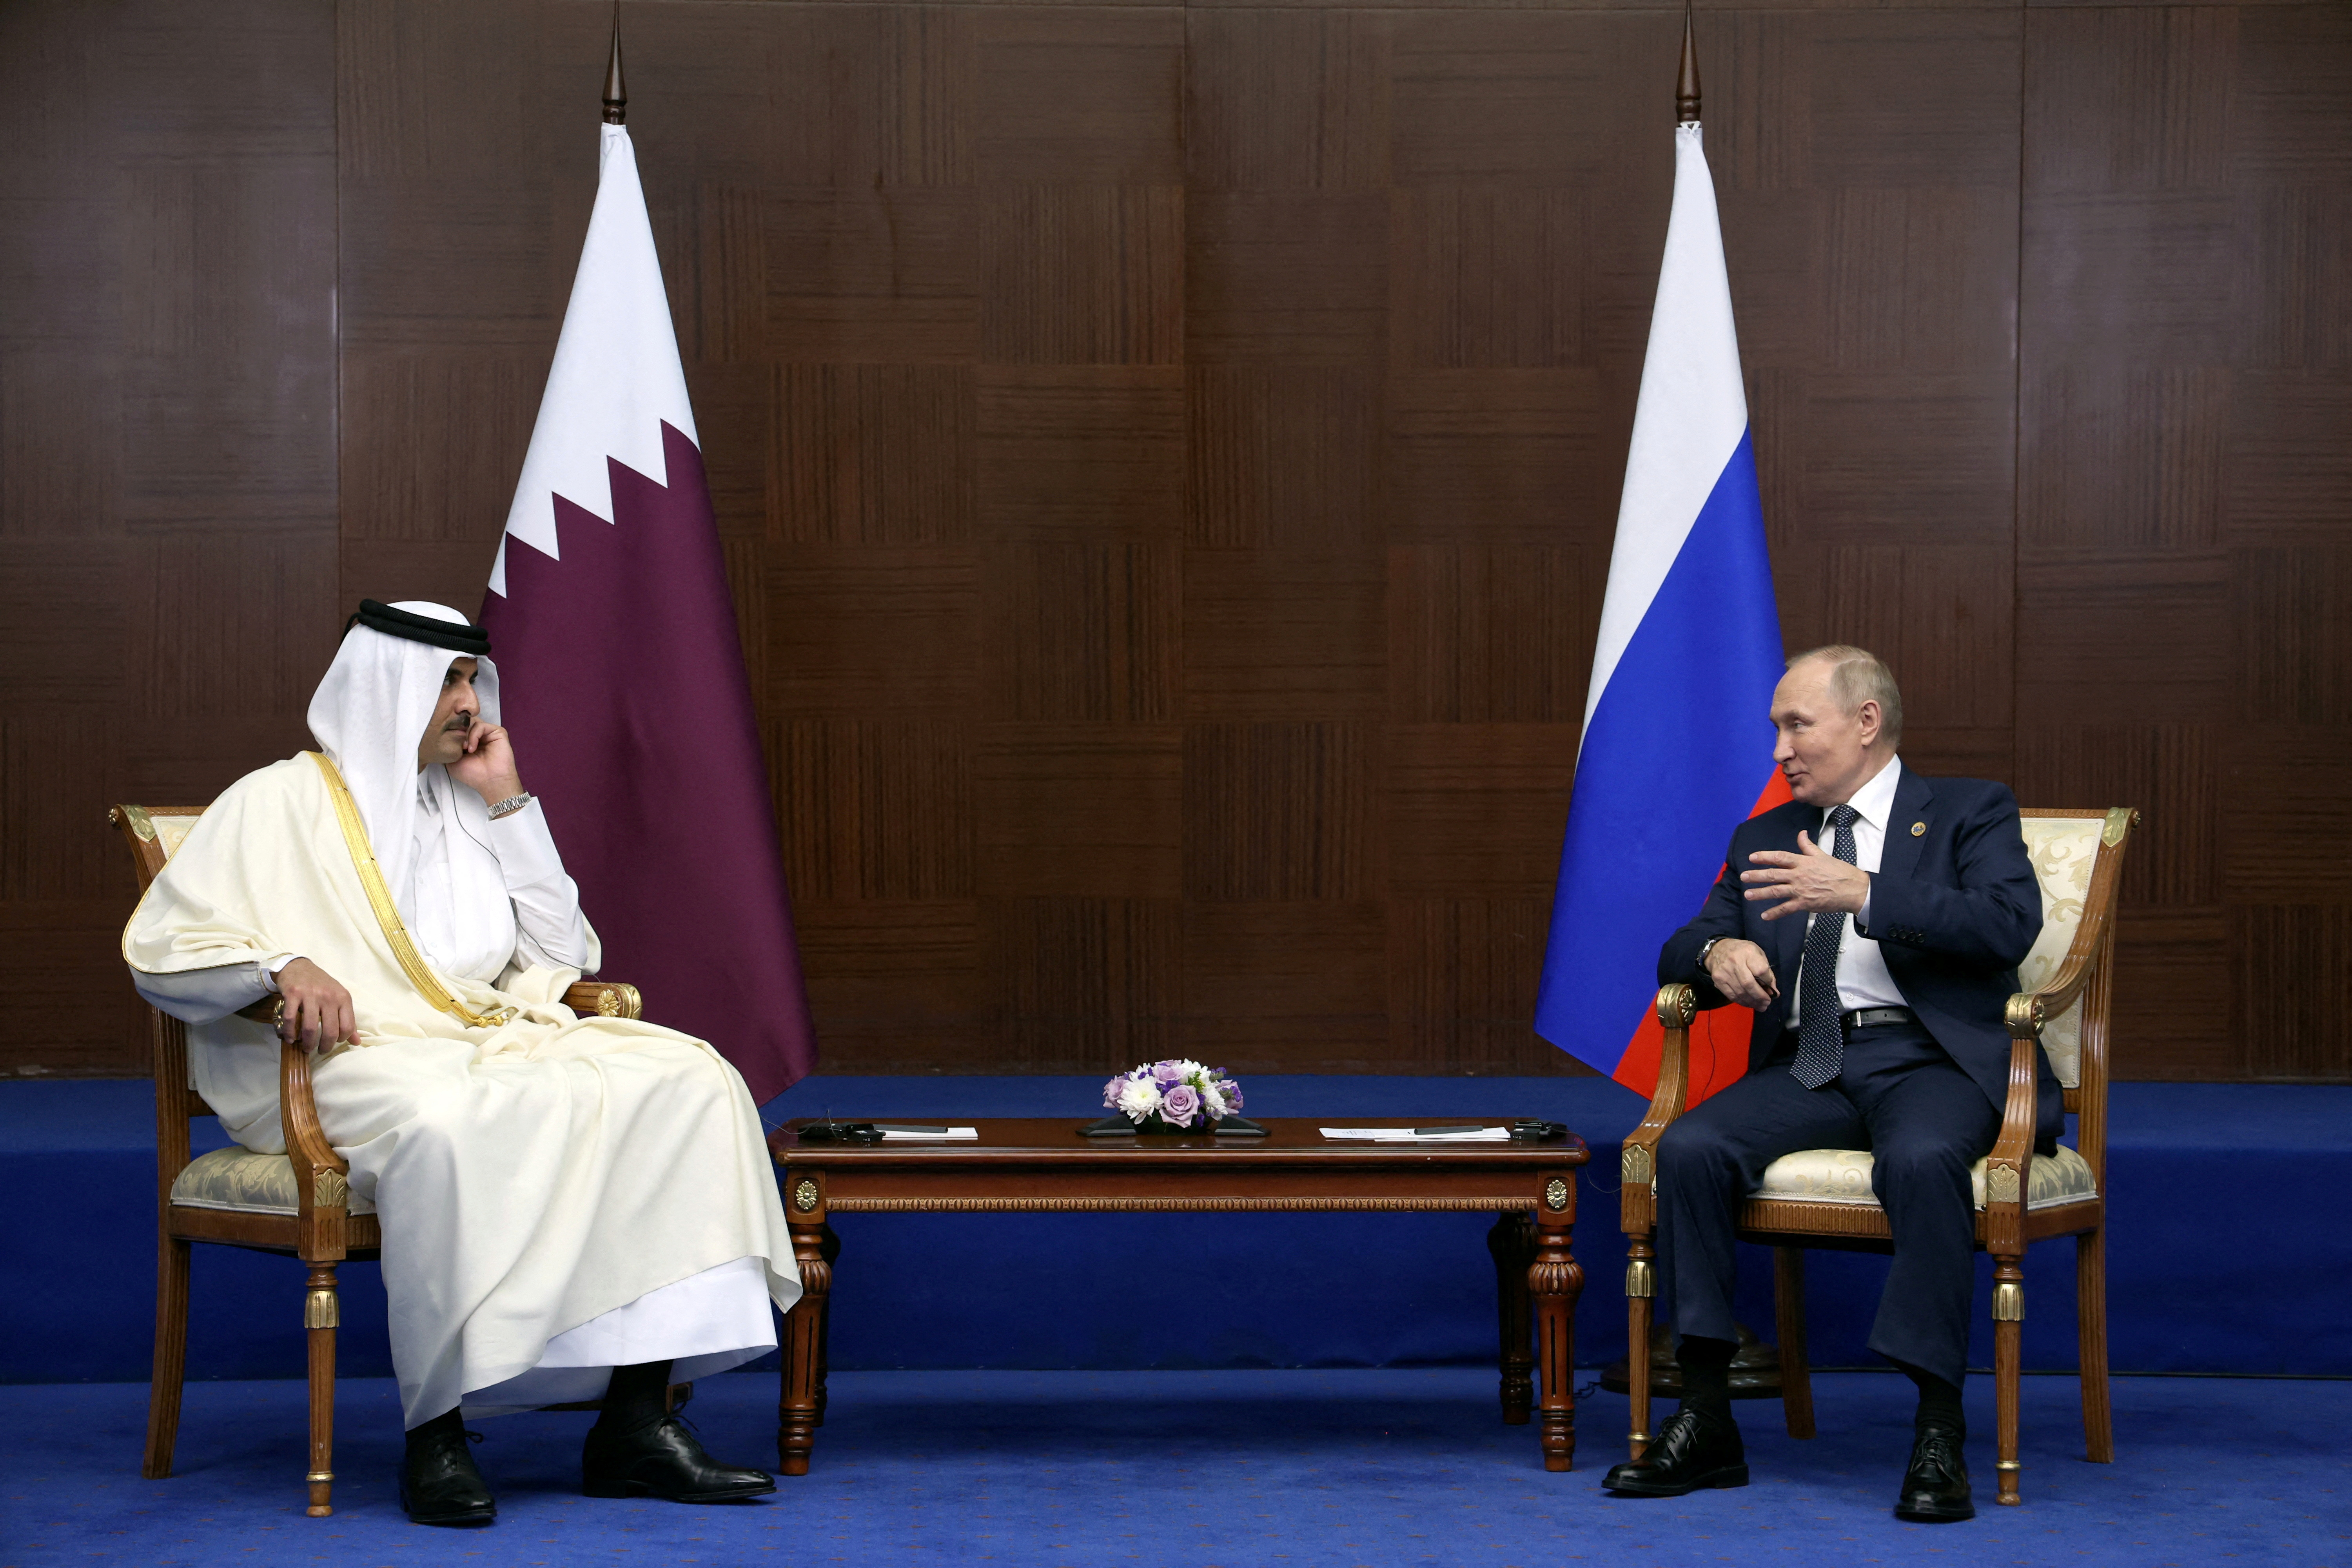 El emir de Qatar, jeque Tamim bin Hamad al-Thani durante un encuentro con el presidente ruso, Vladimir Putin.    Sputnik/Vyacheslav Prokofyev/Pool via REUTERS.